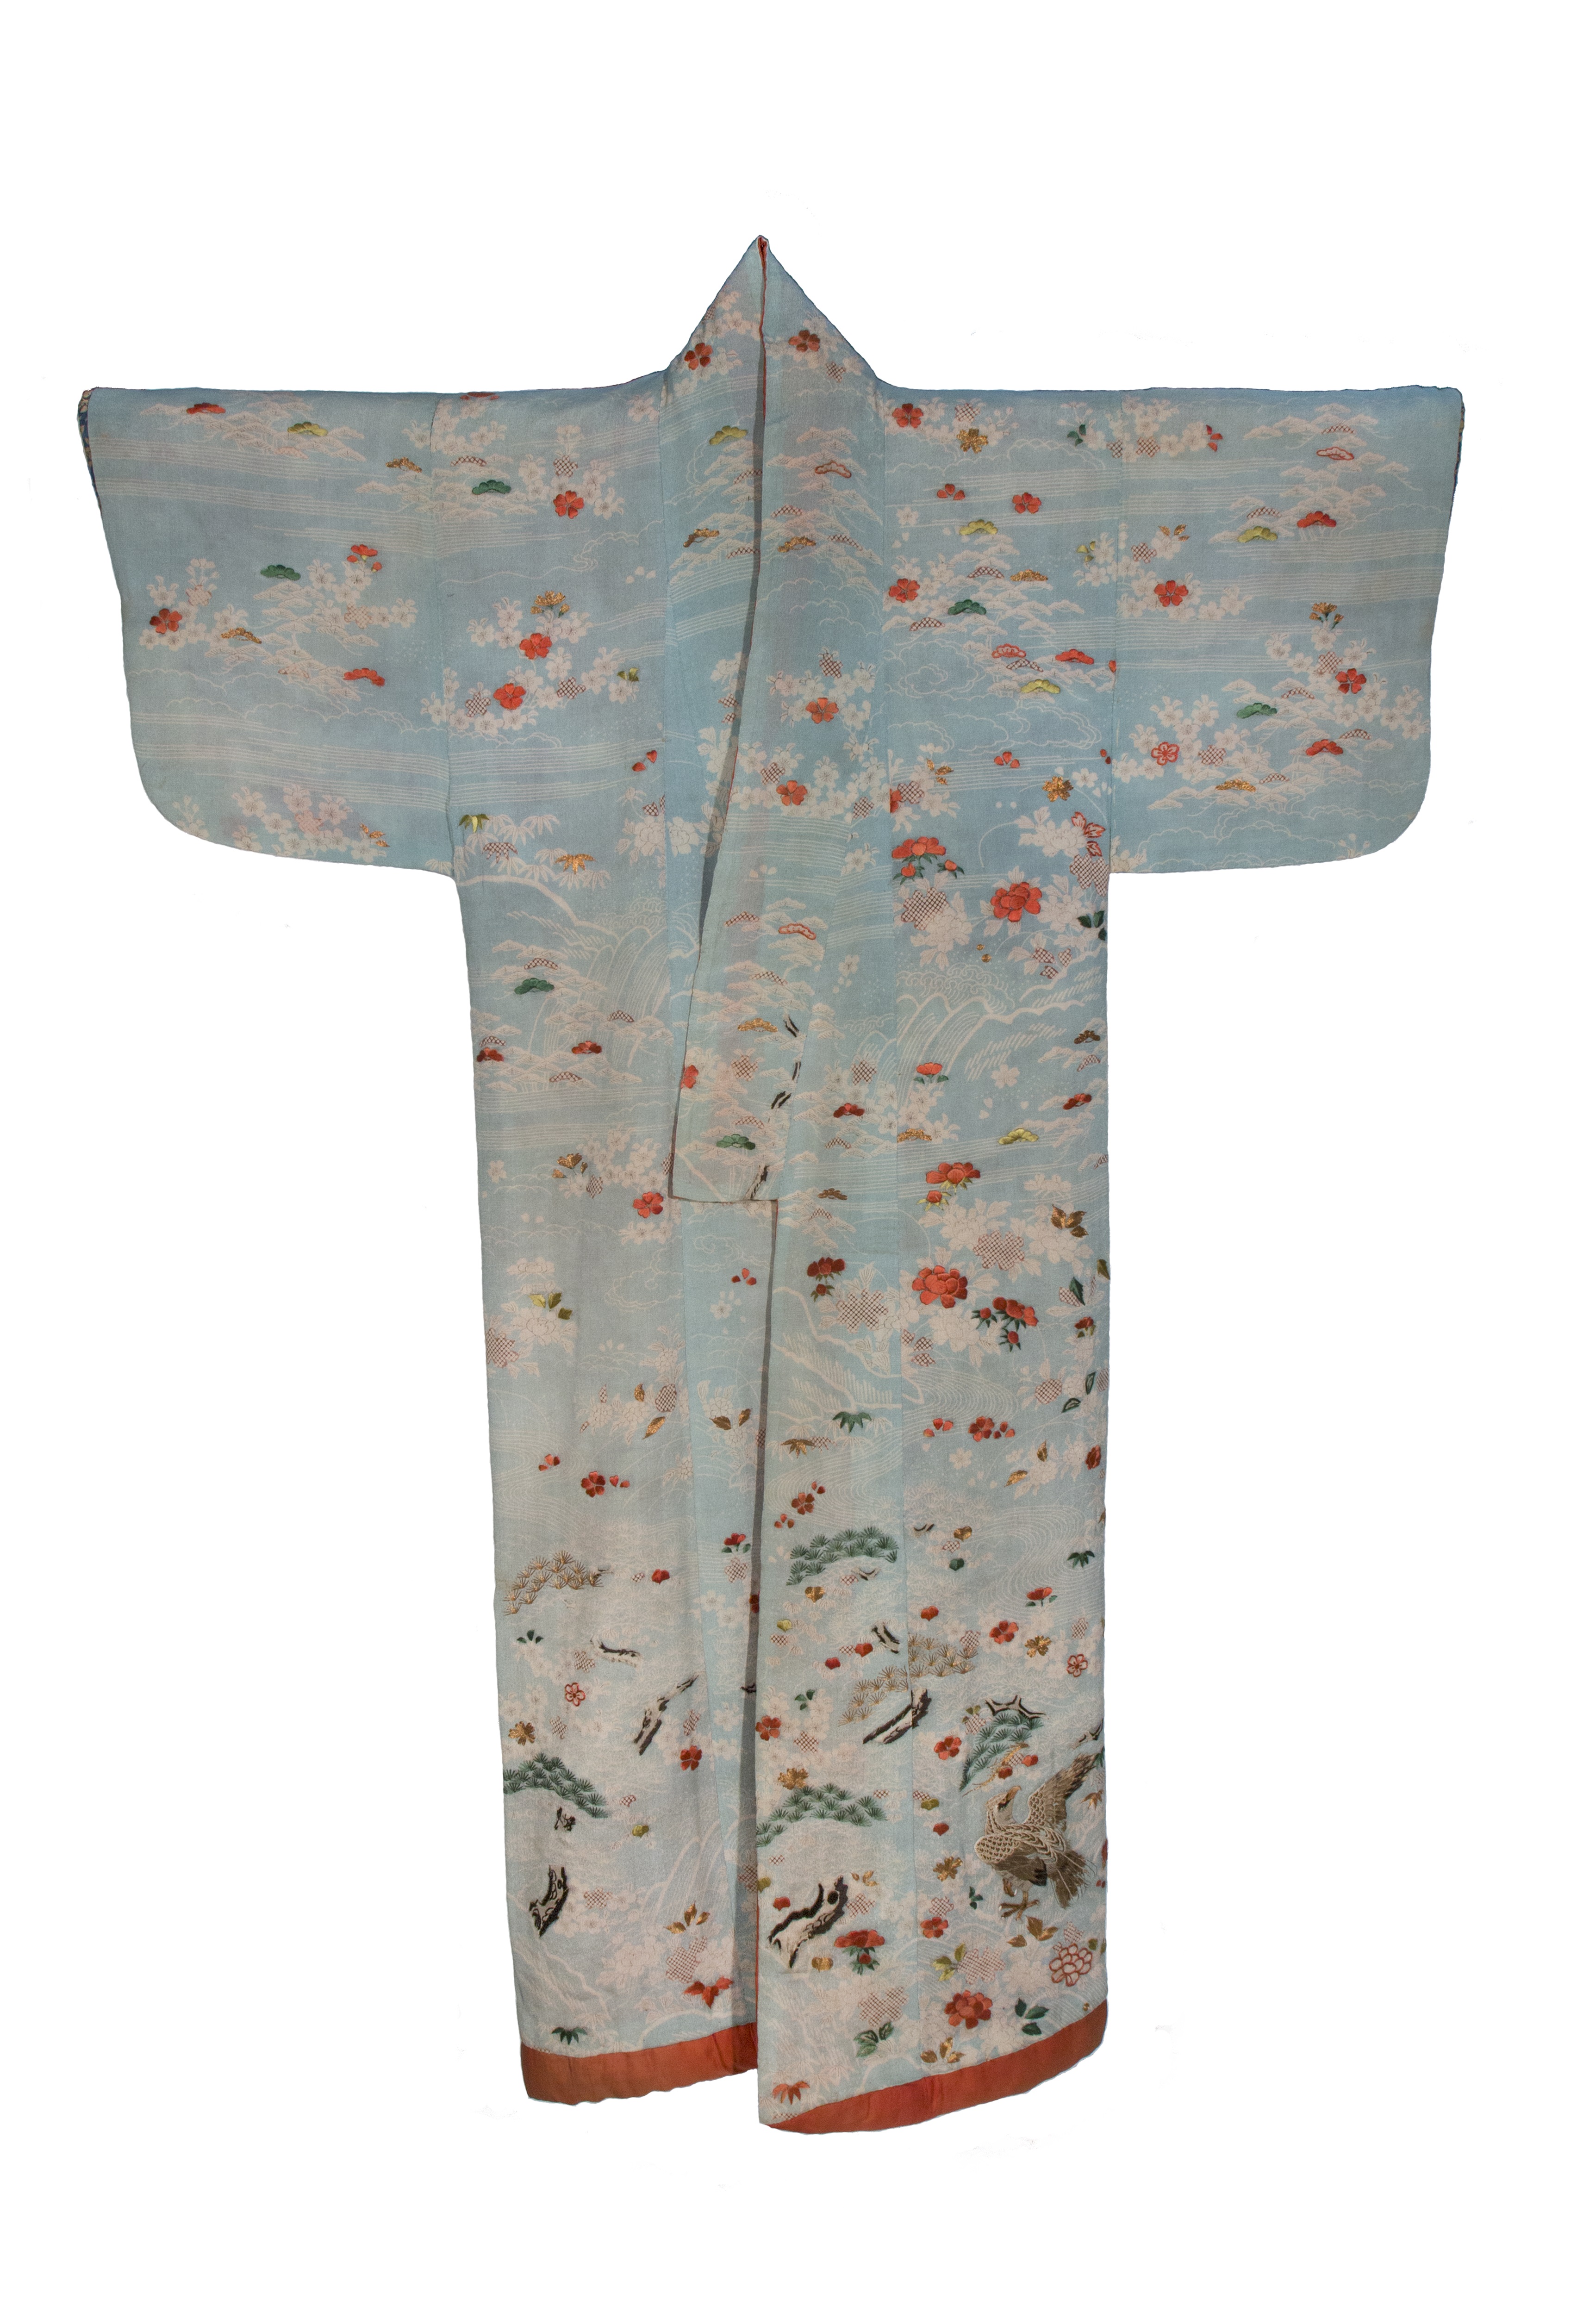 paesaggio fantastico (abito femminile, elemento d'insieme) - ambito giapponese (fine/ inizio XVIII-XIX)